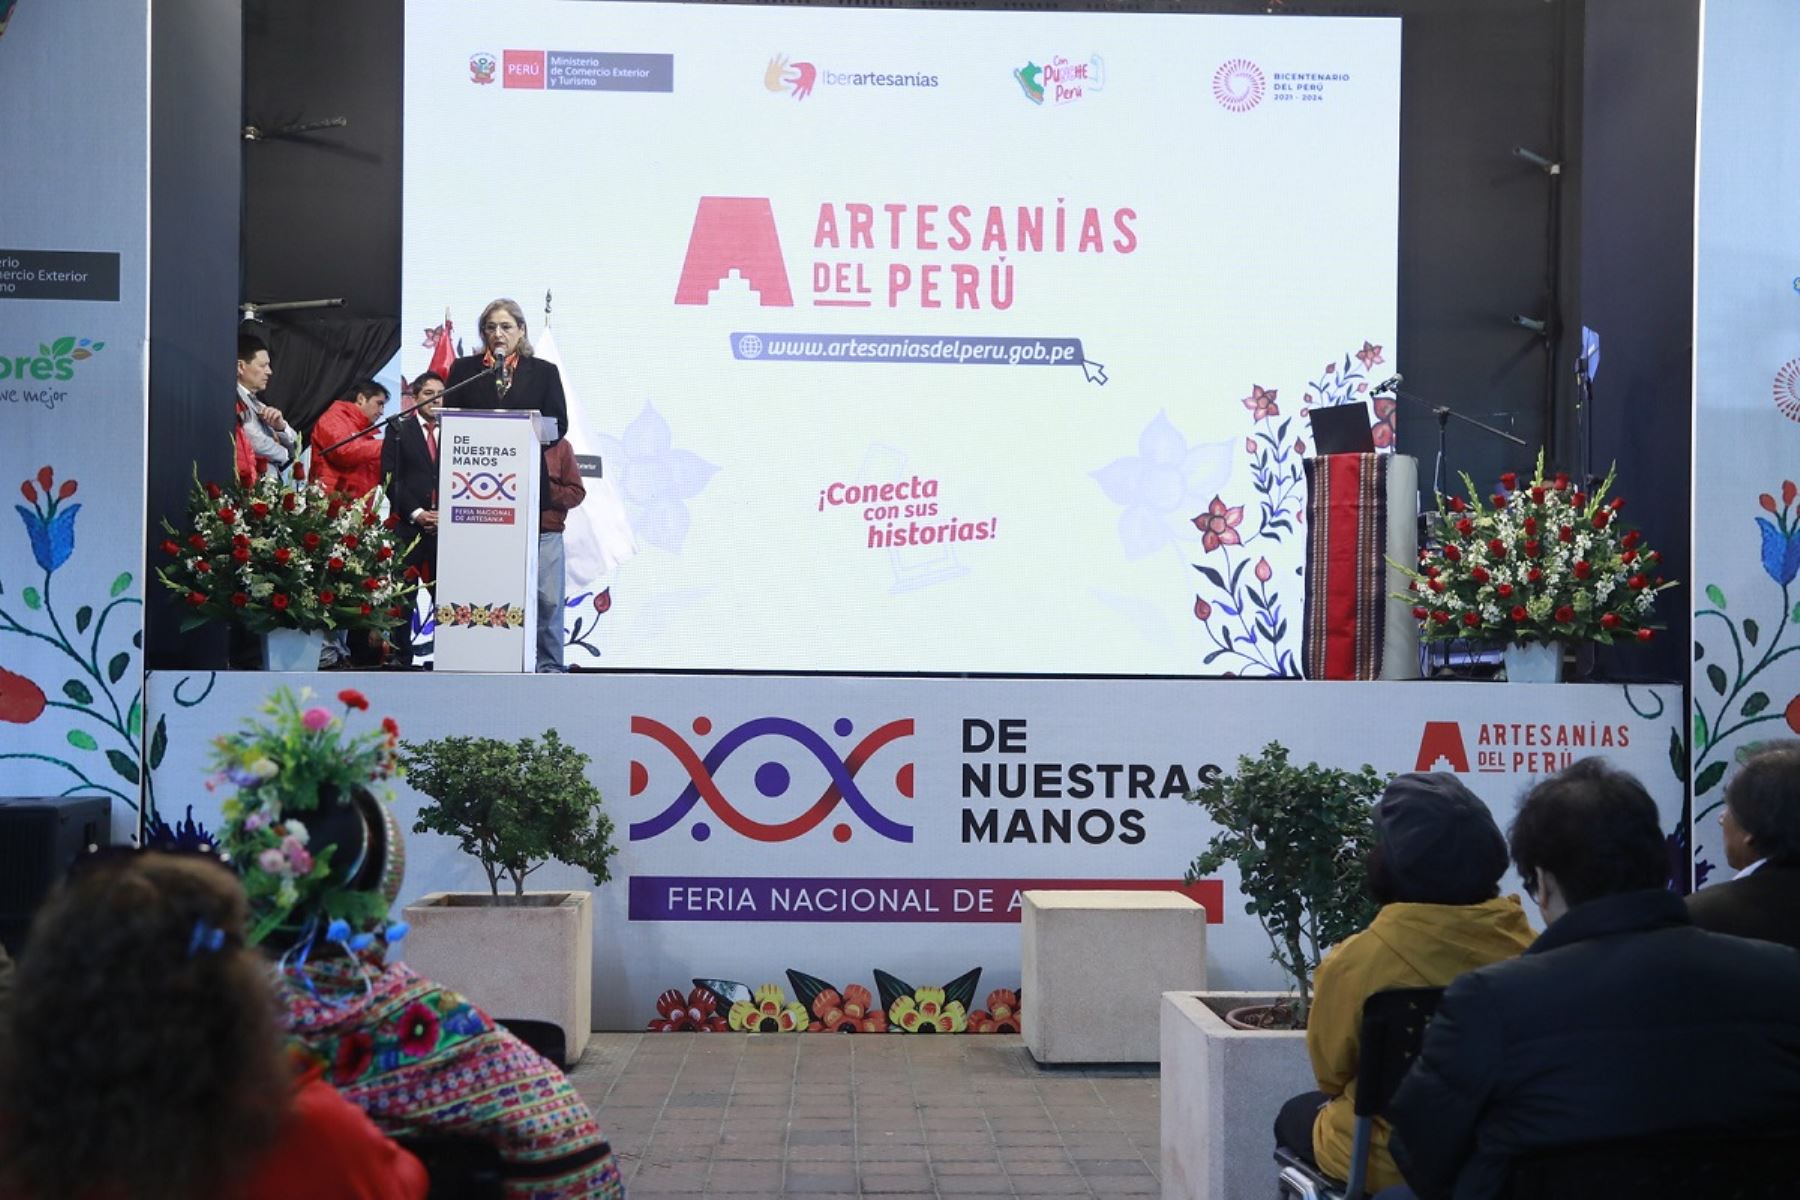 Viceministra de Turismo, Madeleine Burns, presenta la nueva plataforma "Artesanías del Perú". Foto: Cortesía.